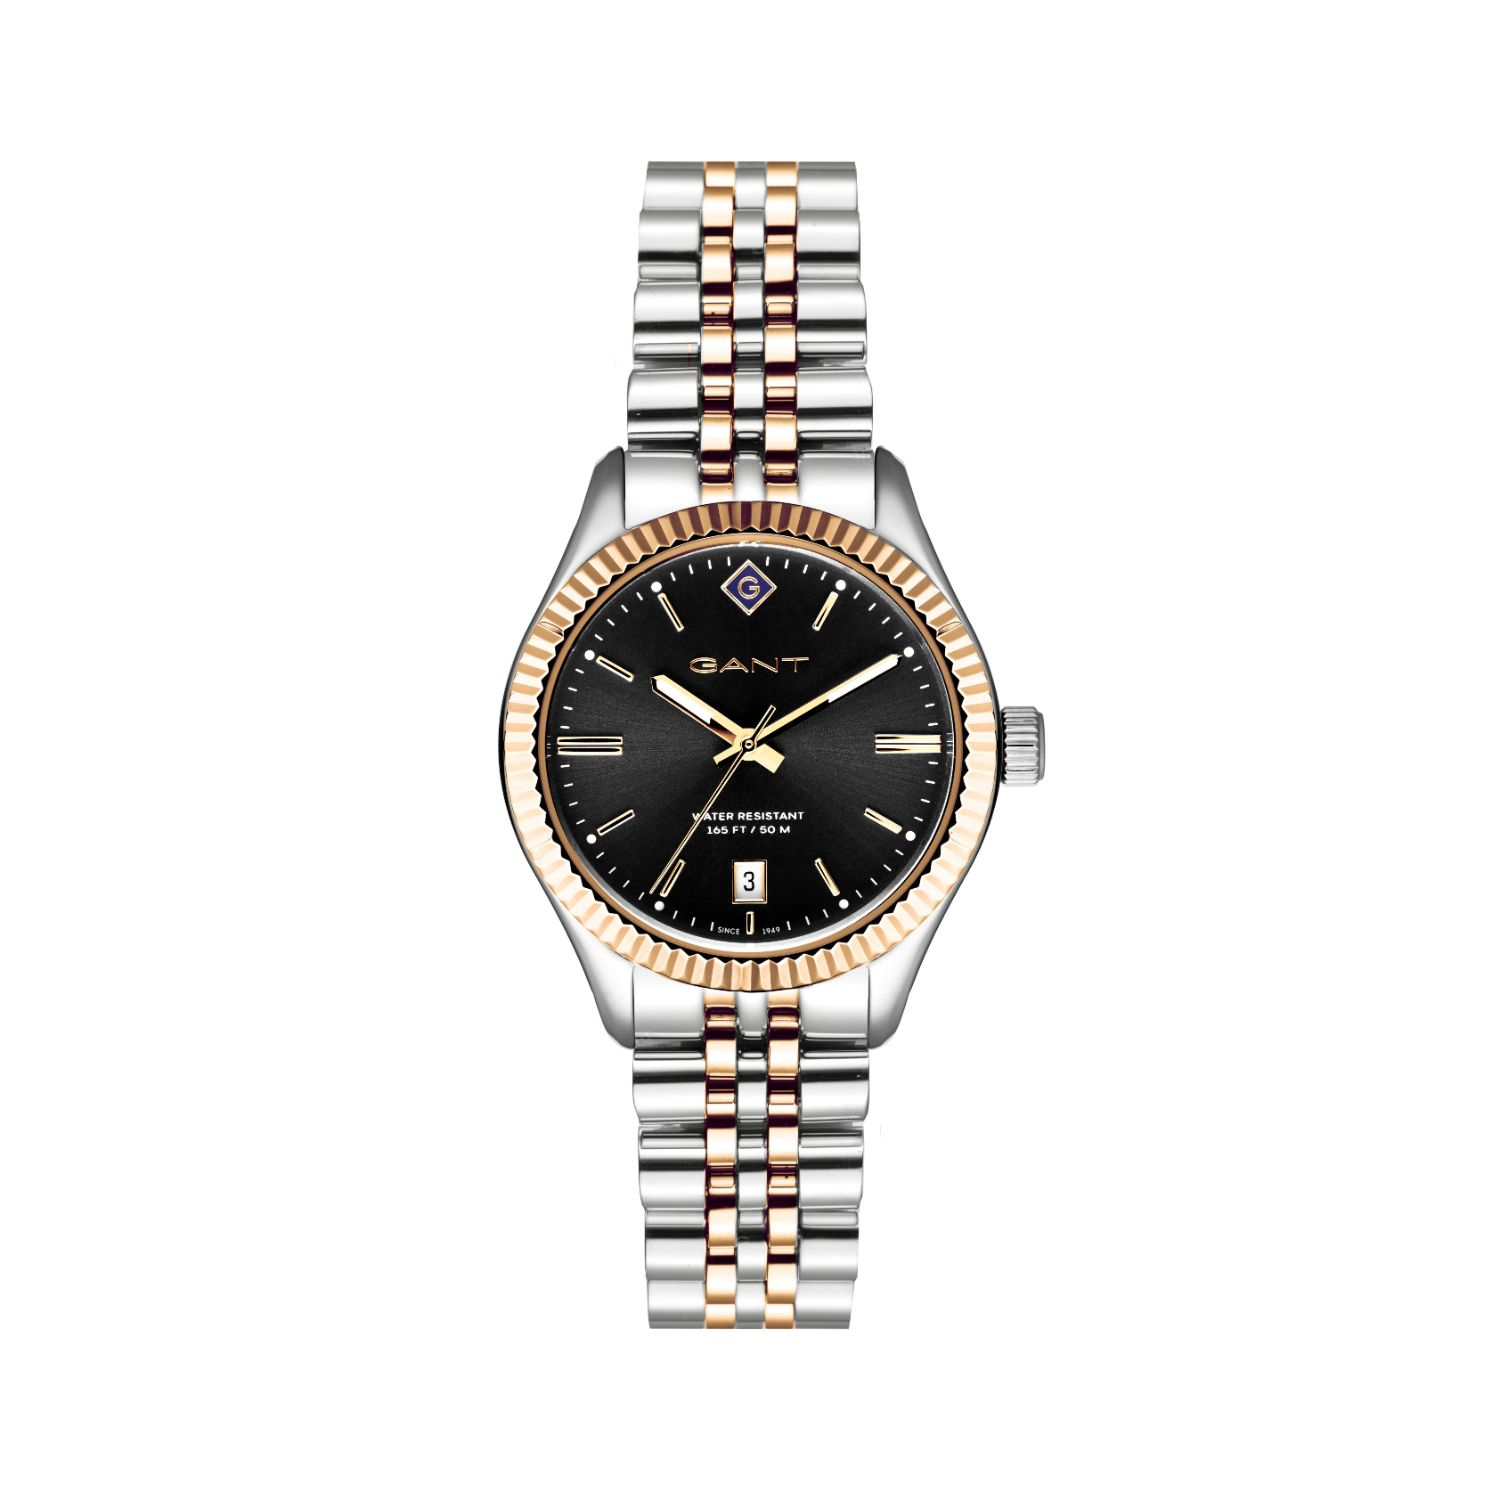 Γυναικείο ρολόι Gant από δίχρωμο ανοξείδωτο ατσάλι με μαύρο καντράν και μπρασελέ.